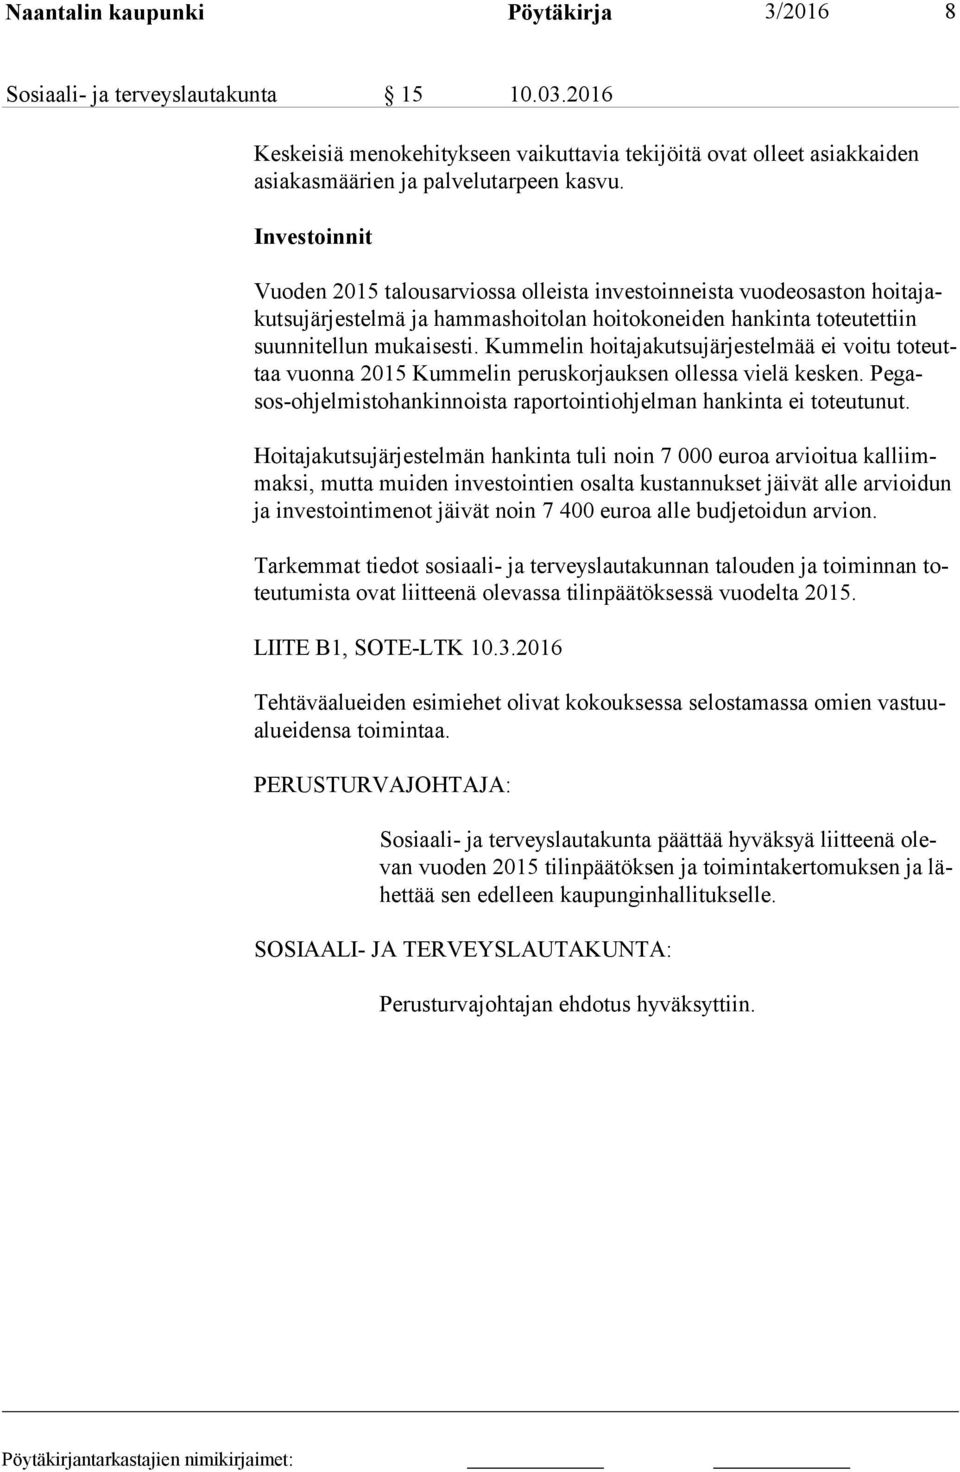 Kummelin hoitajakutsujärjestelmää ei voitu to teuttaa vuonna 2015 Kummelin peruskorjauksen ollessa vielä kesken. Pe gasos-oh jel mis to han kin nois ta raportointiohjelman hankinta ei toteutunut.